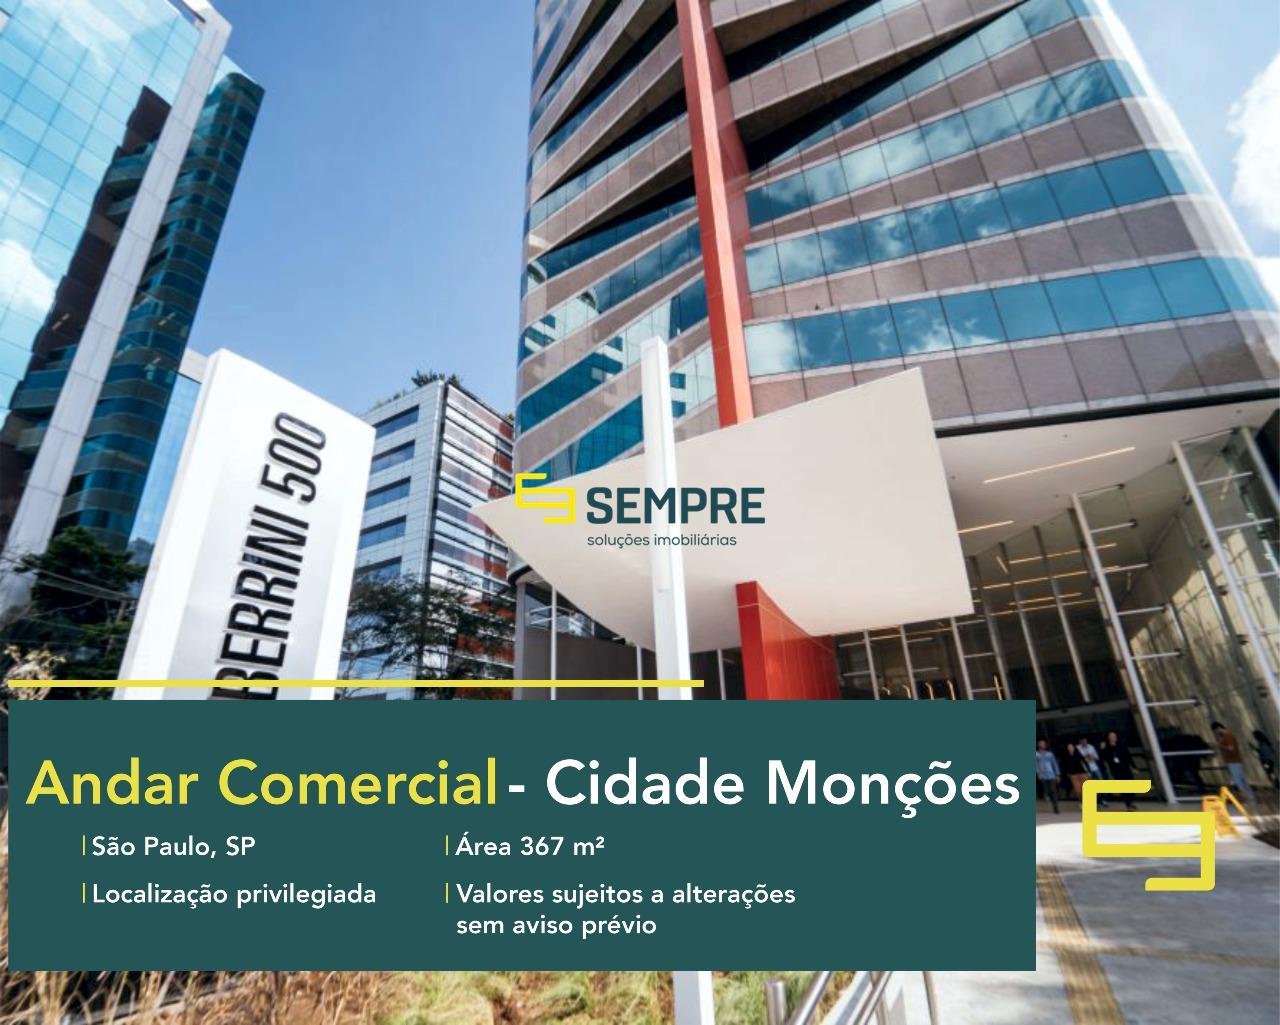 Laje corporativa em Cidade Monções para locação - São Paulo, excelente localização. O estabelecimento comercial conta com área de 367 m².